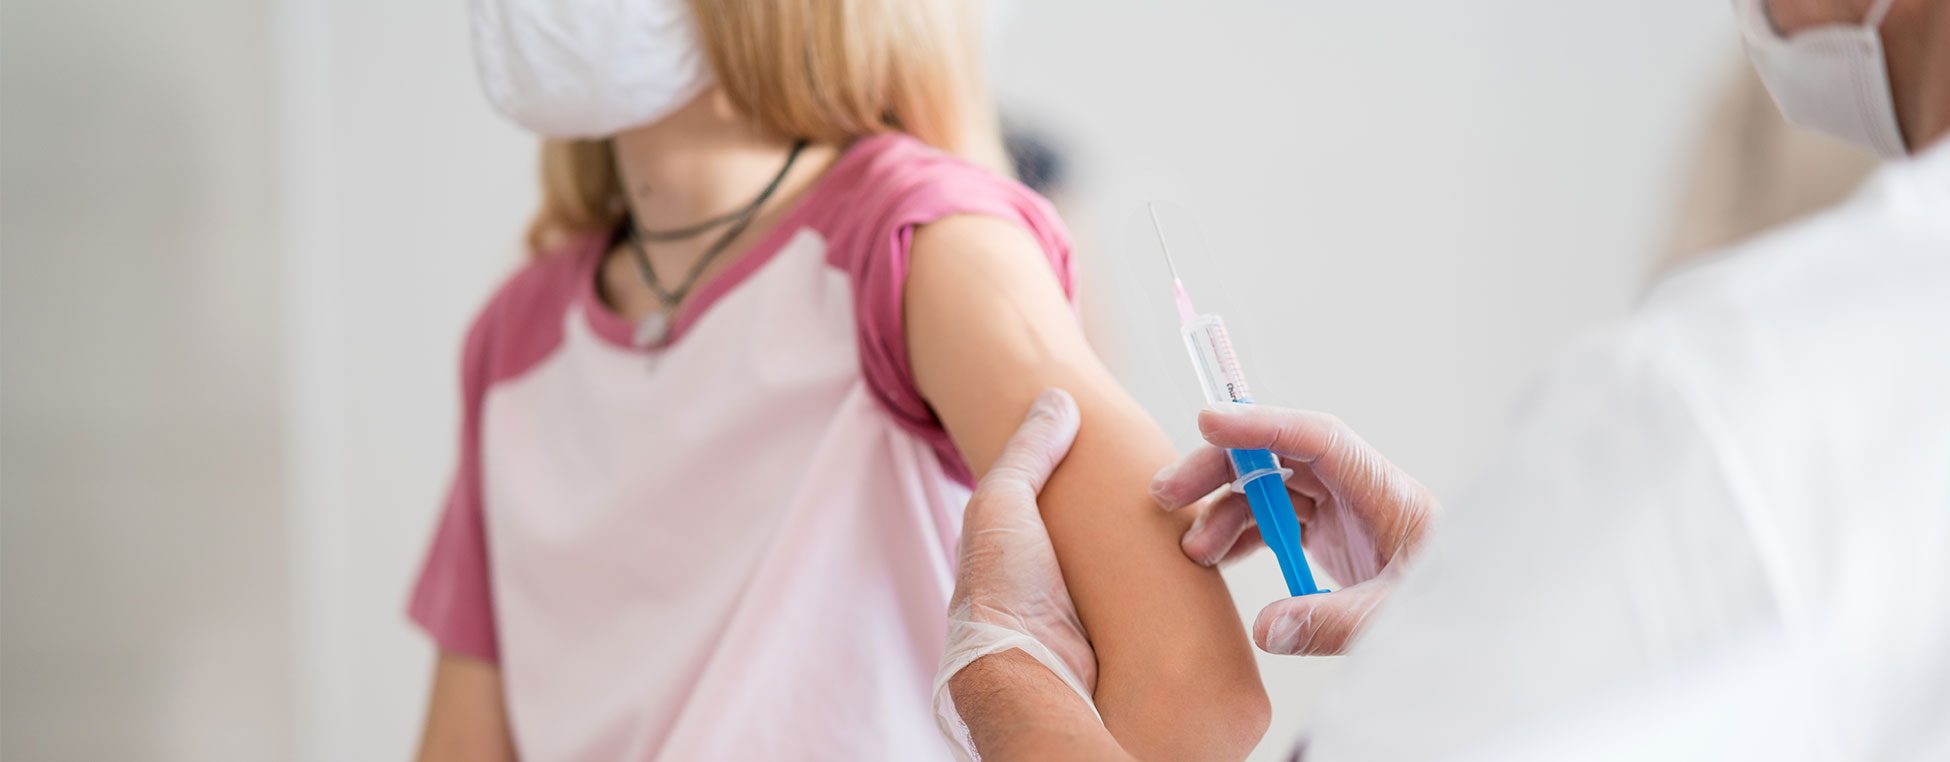 Arm einer Jugendlichen kurz vor Impfung durch einen Arzt